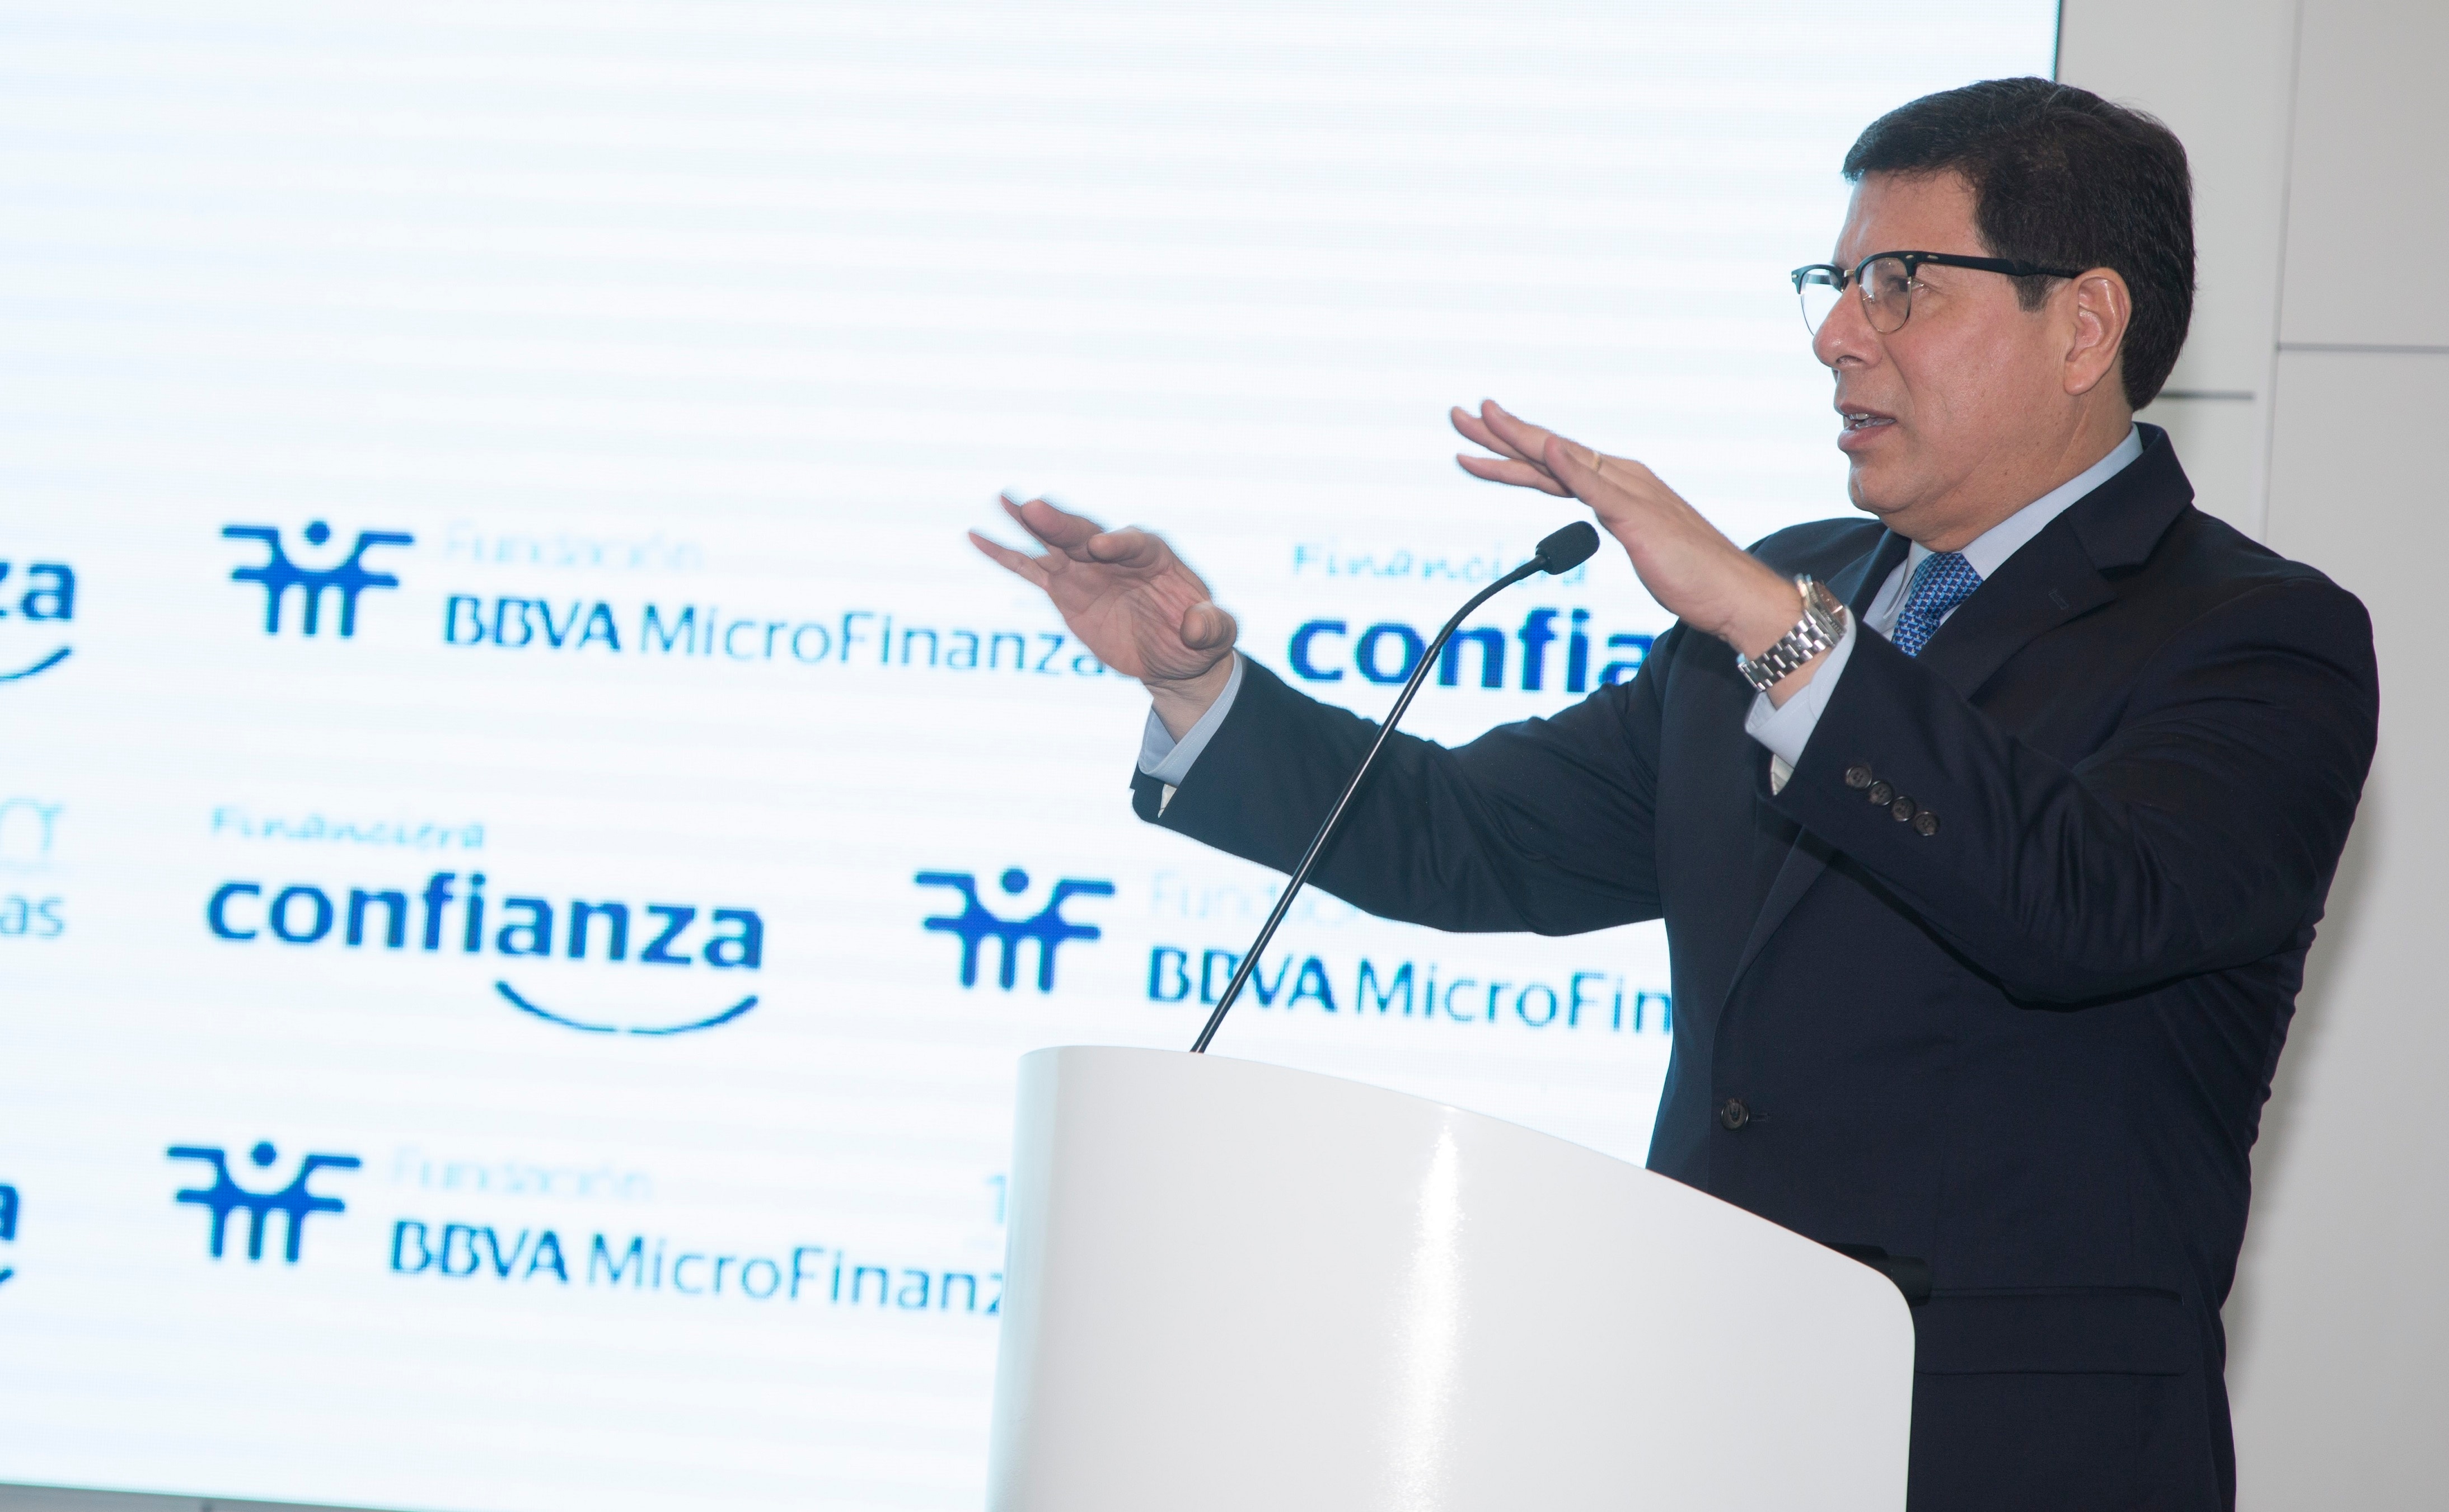 Foto de Martín Naranjo, CEO de Financiera Confianza, entidad de la Fundación Microfinanzas BBVA